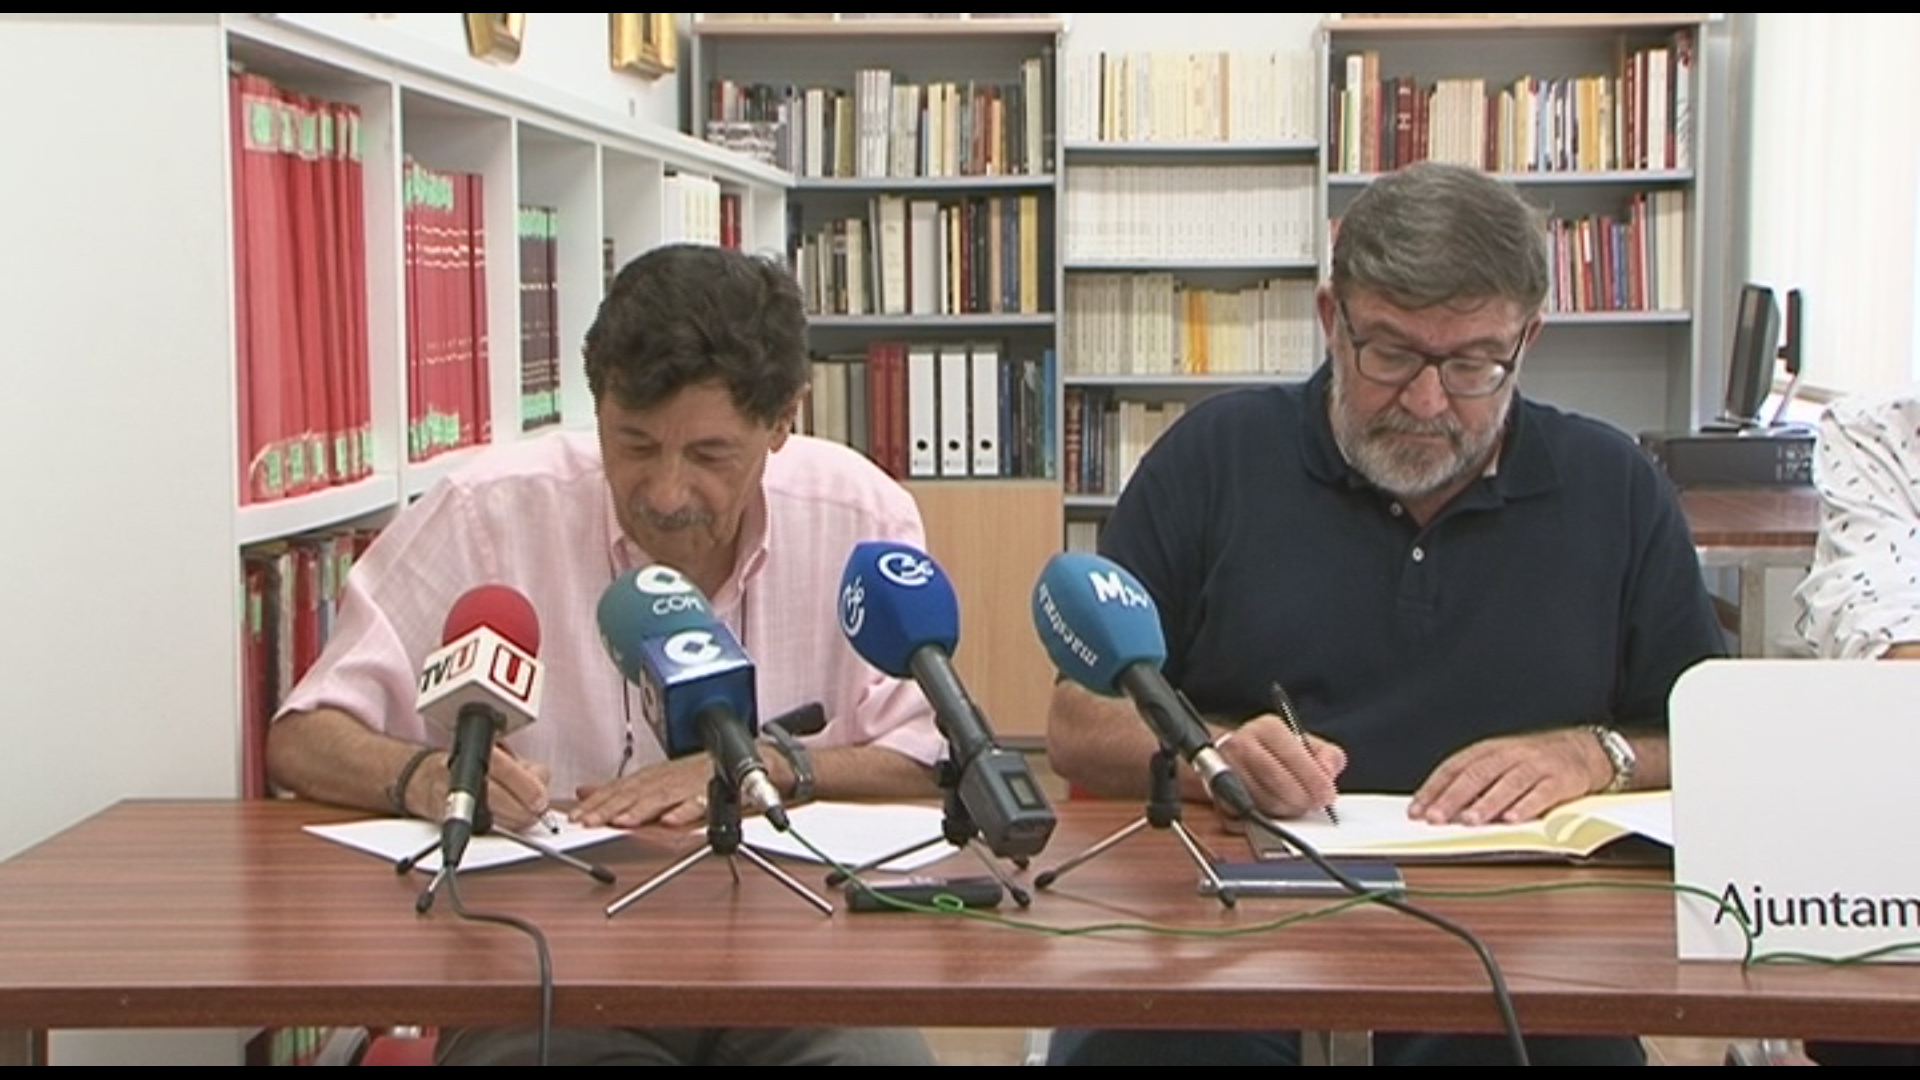 Amics de Vinaròs dona part del seu fons documental a l'arxiu històric local